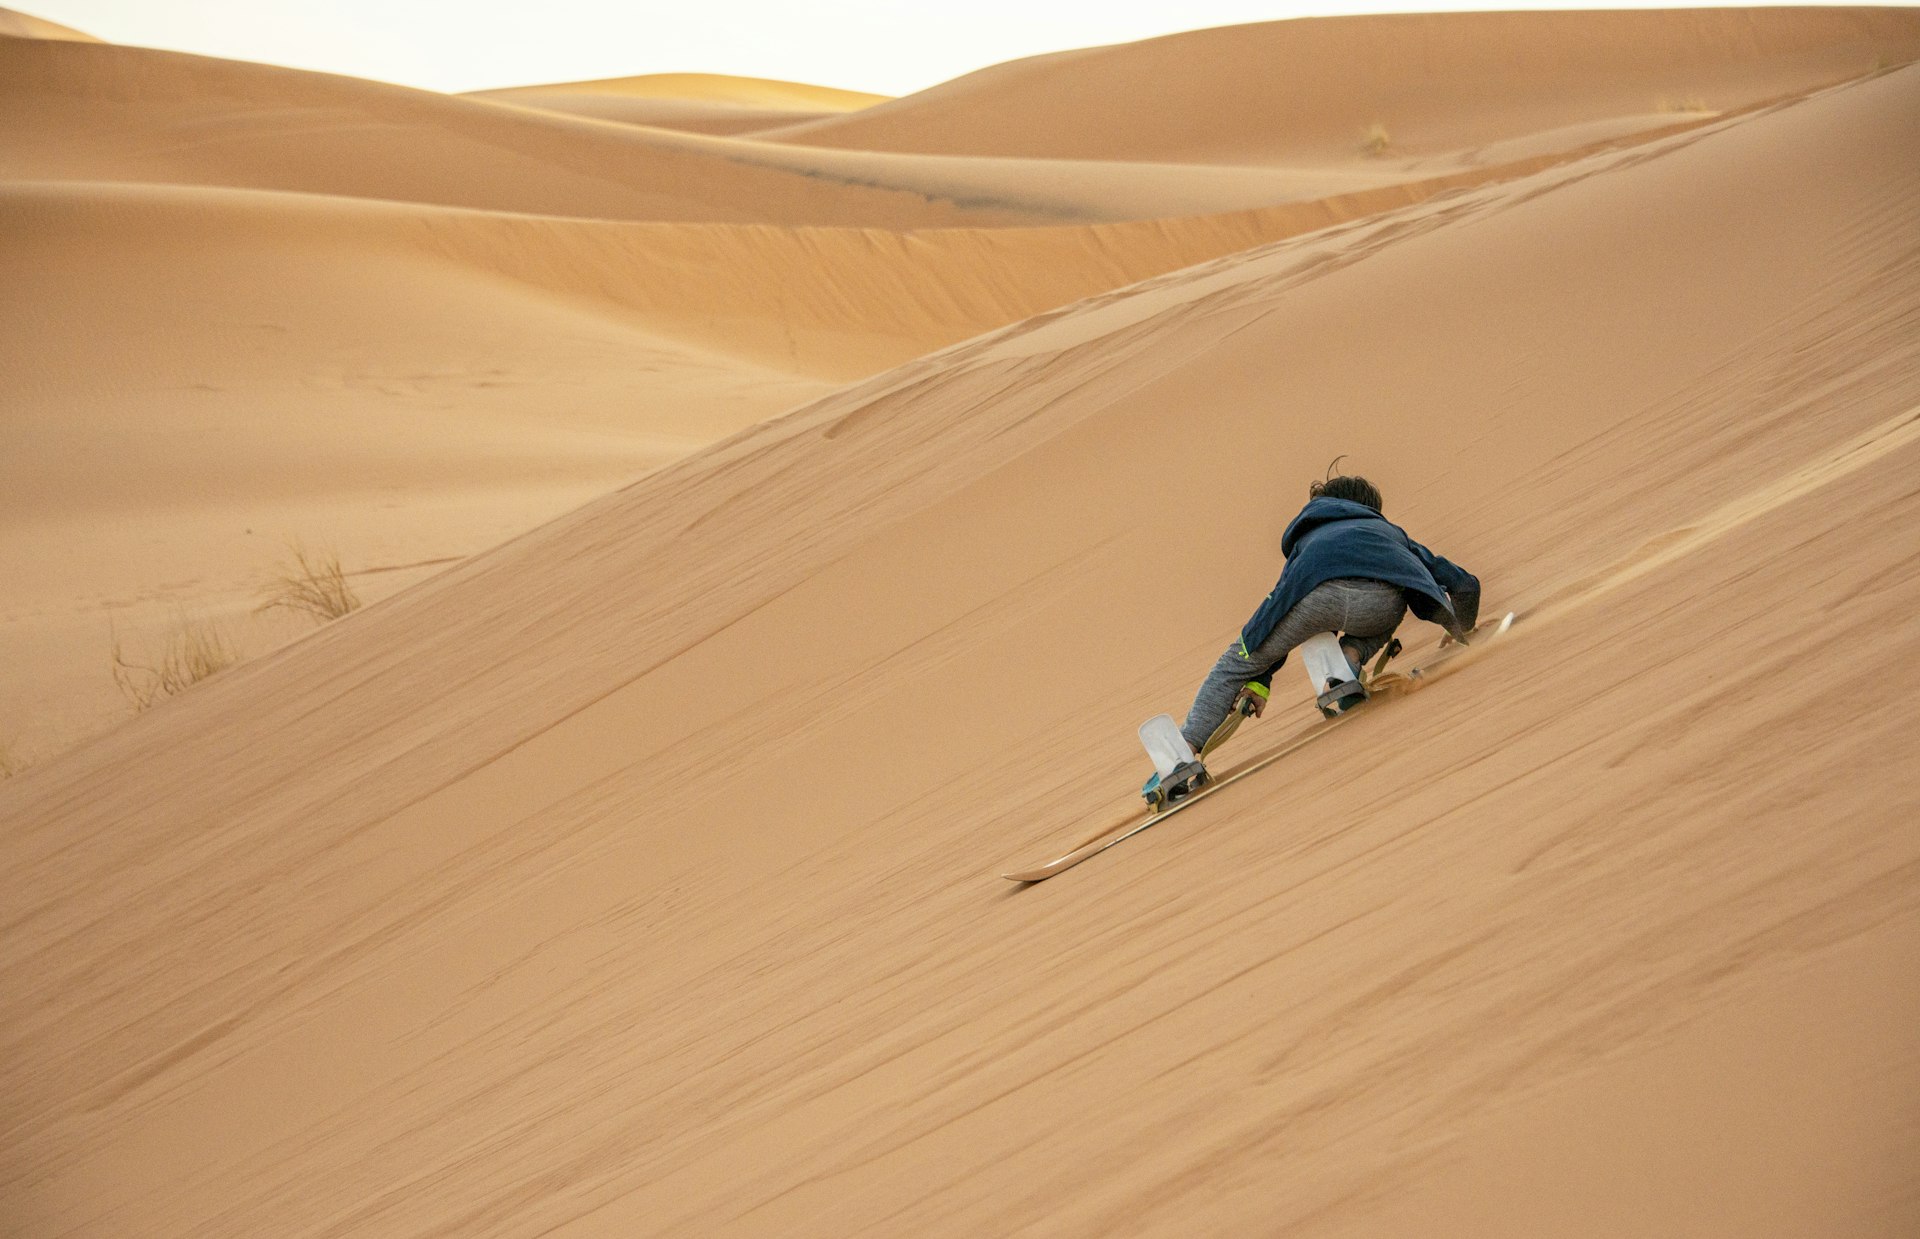 Un jeune garçon fait du sandboard sur une grande dune dans la Saraha, au Maroc